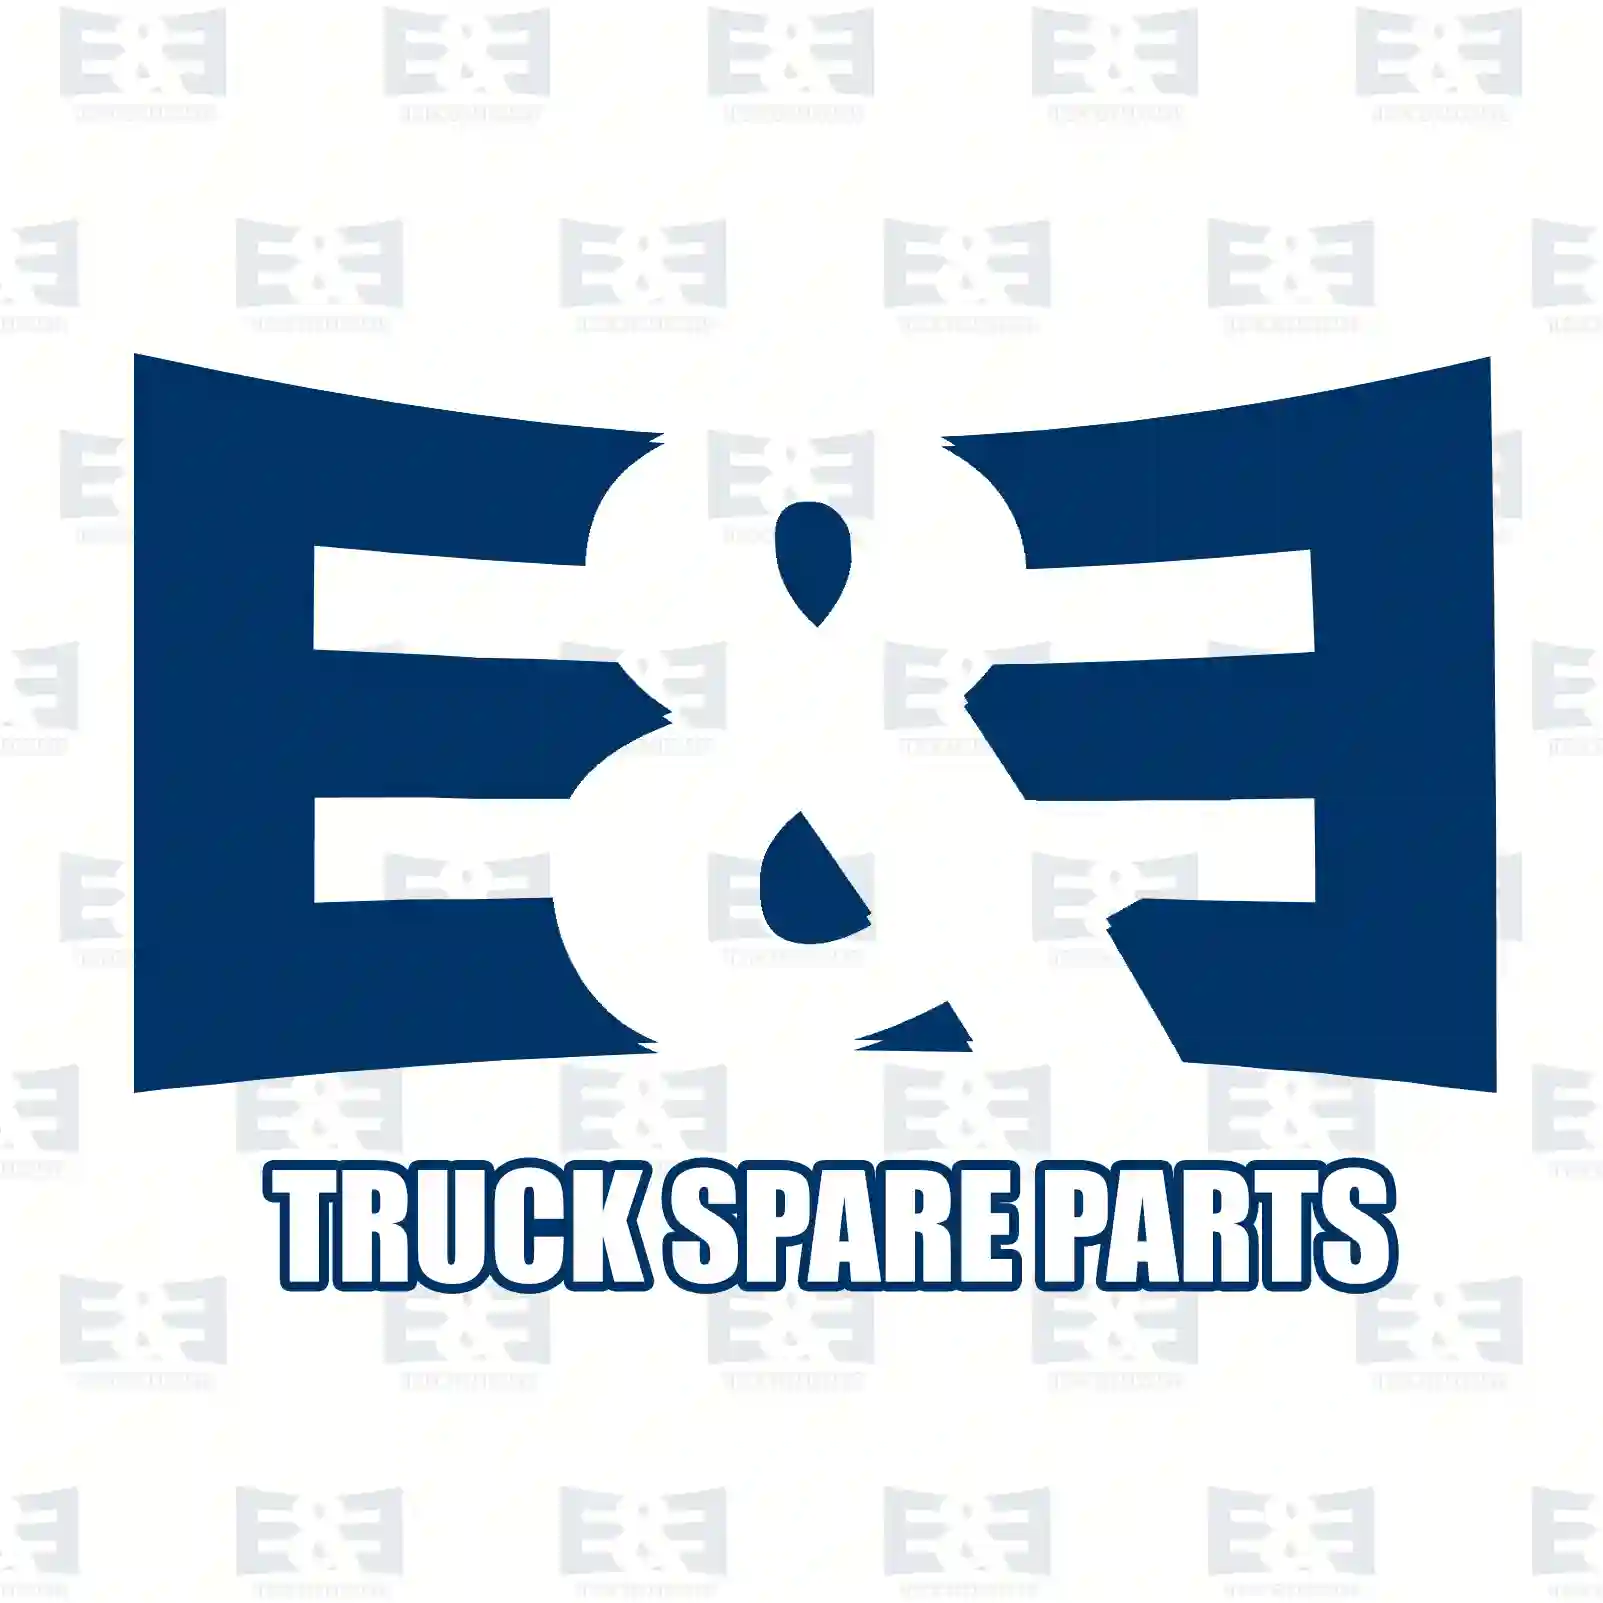 Step well case, left, 2E2280067, 1363816, 1437809, 1656917, 1893901 ||  2E2280067 E&E Truck Spare Parts | Truck Spare Parts, Auotomotive Spare Parts Step well case, left, 2E2280067, 1363816, 1437809, 1656917, 1893901 ||  2E2280067 E&E Truck Spare Parts | Truck Spare Parts, Auotomotive Spare Parts